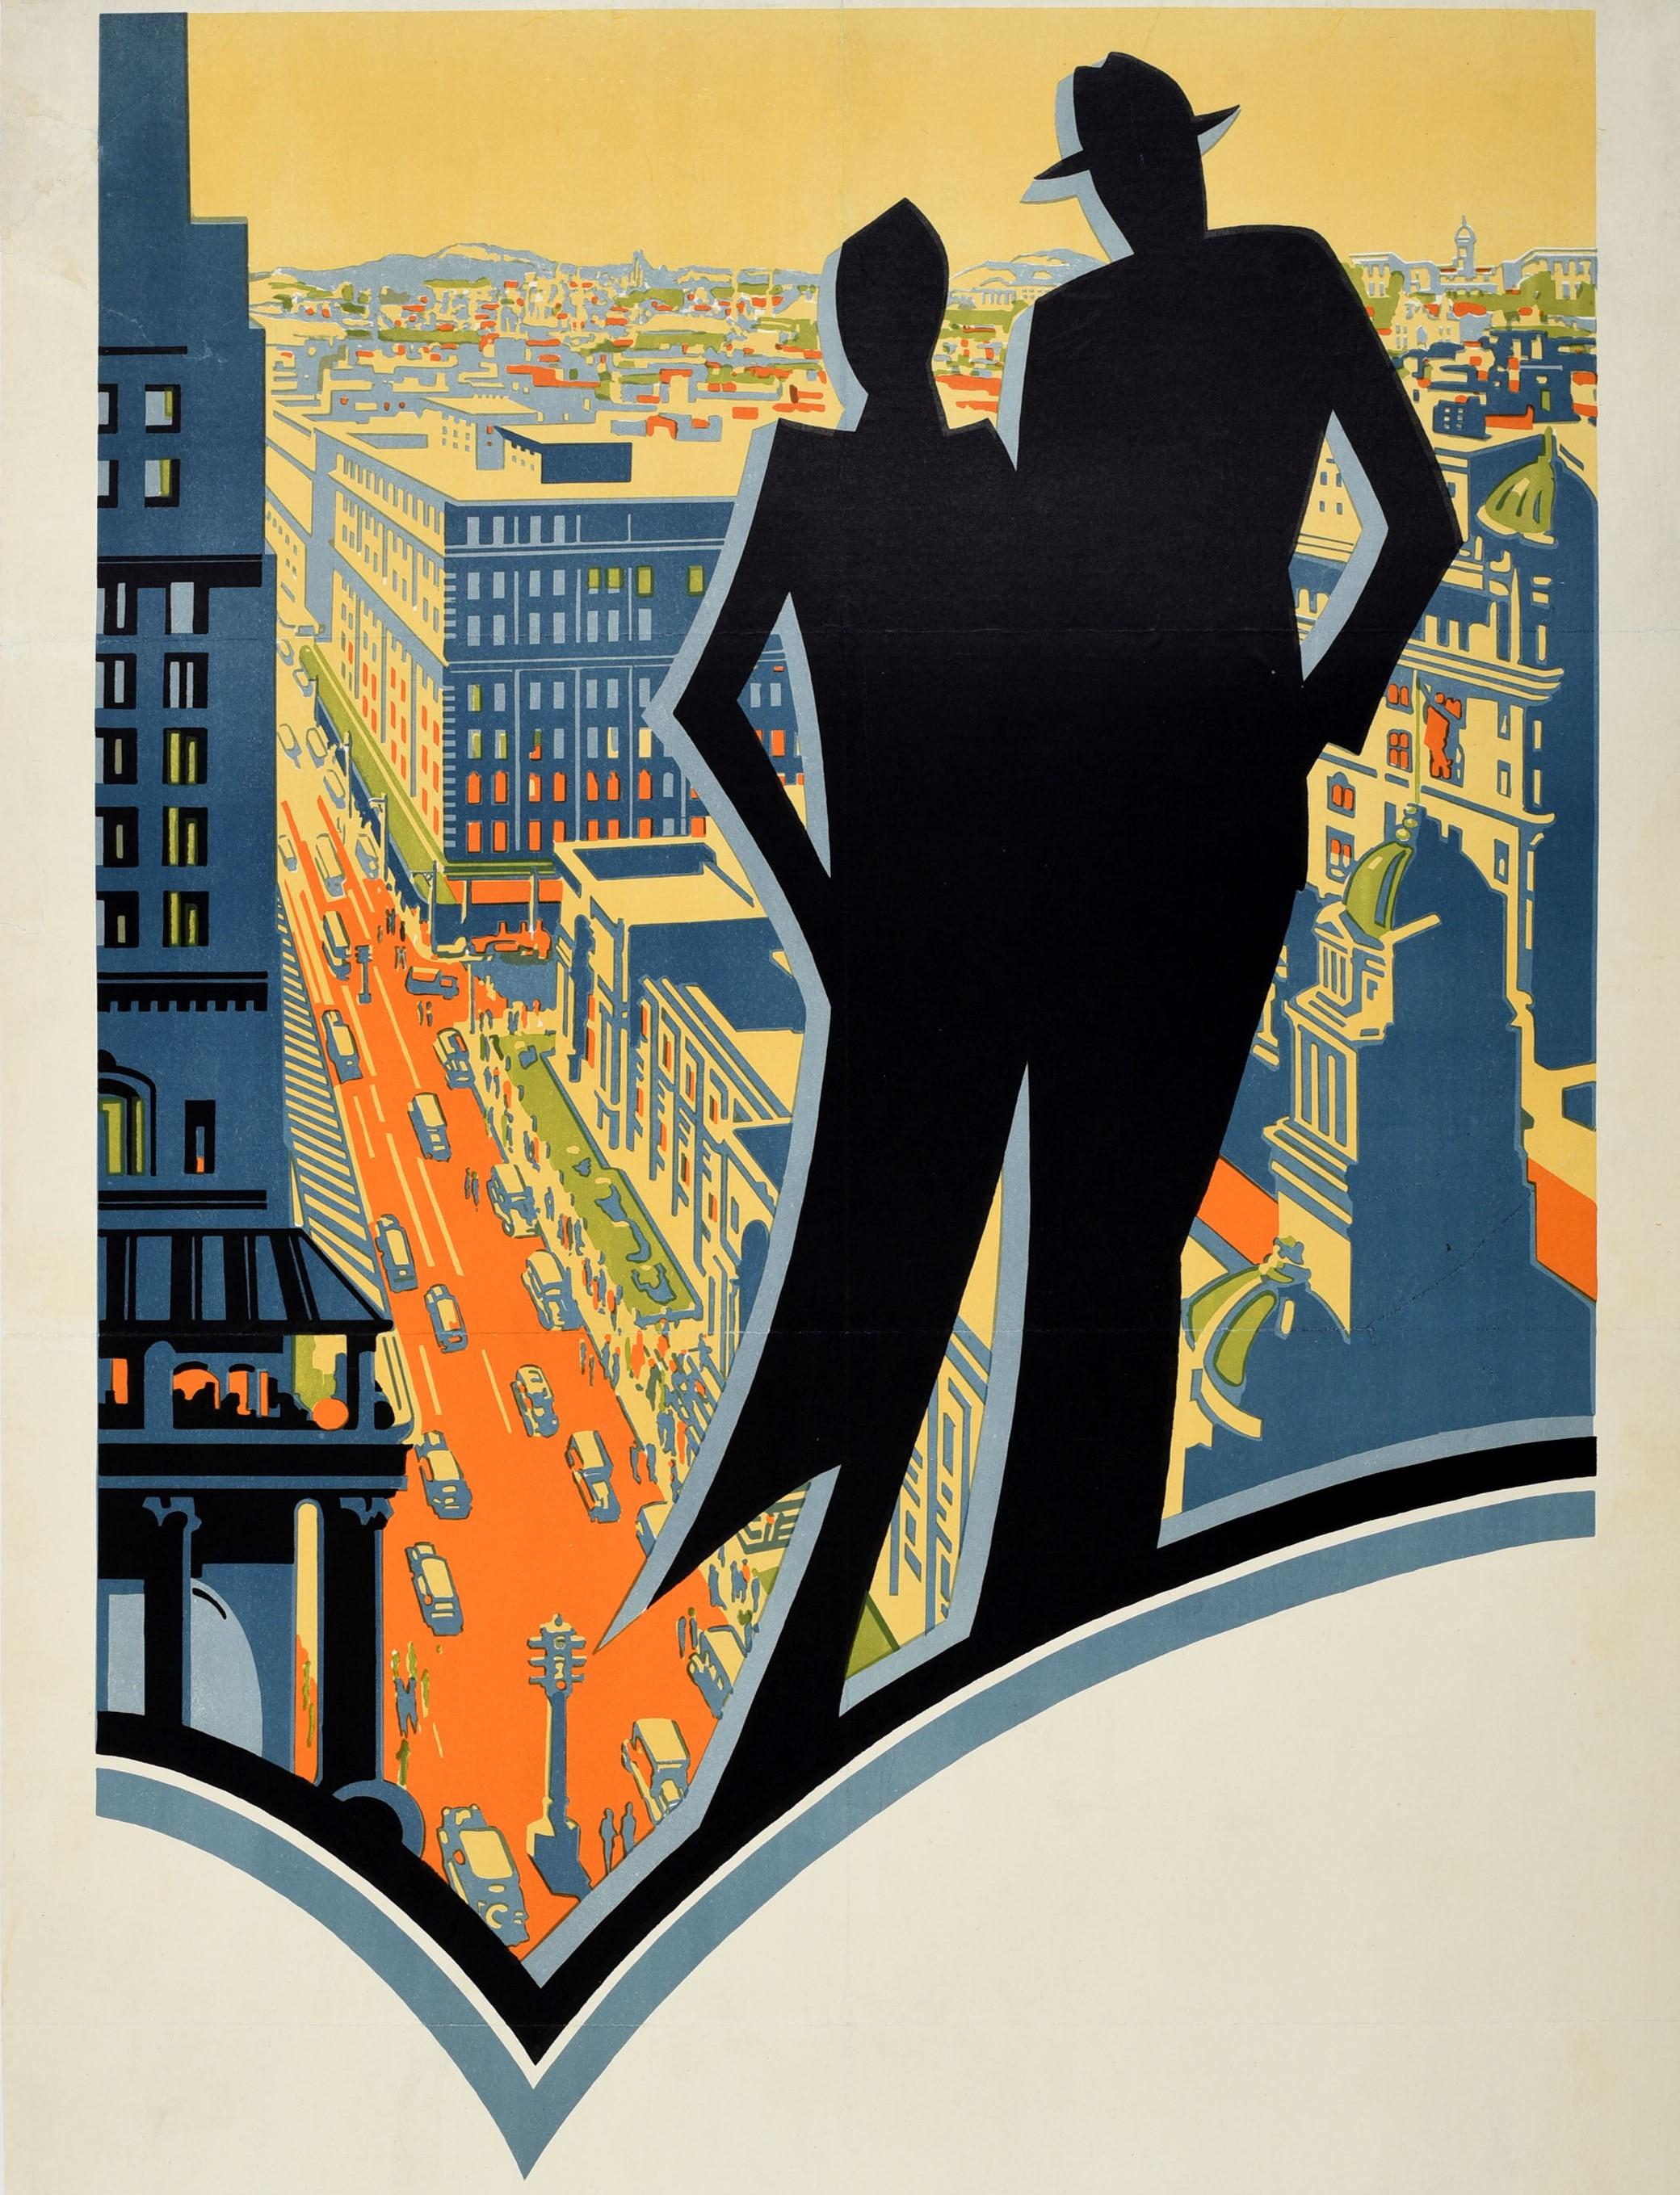 metropolis original poster